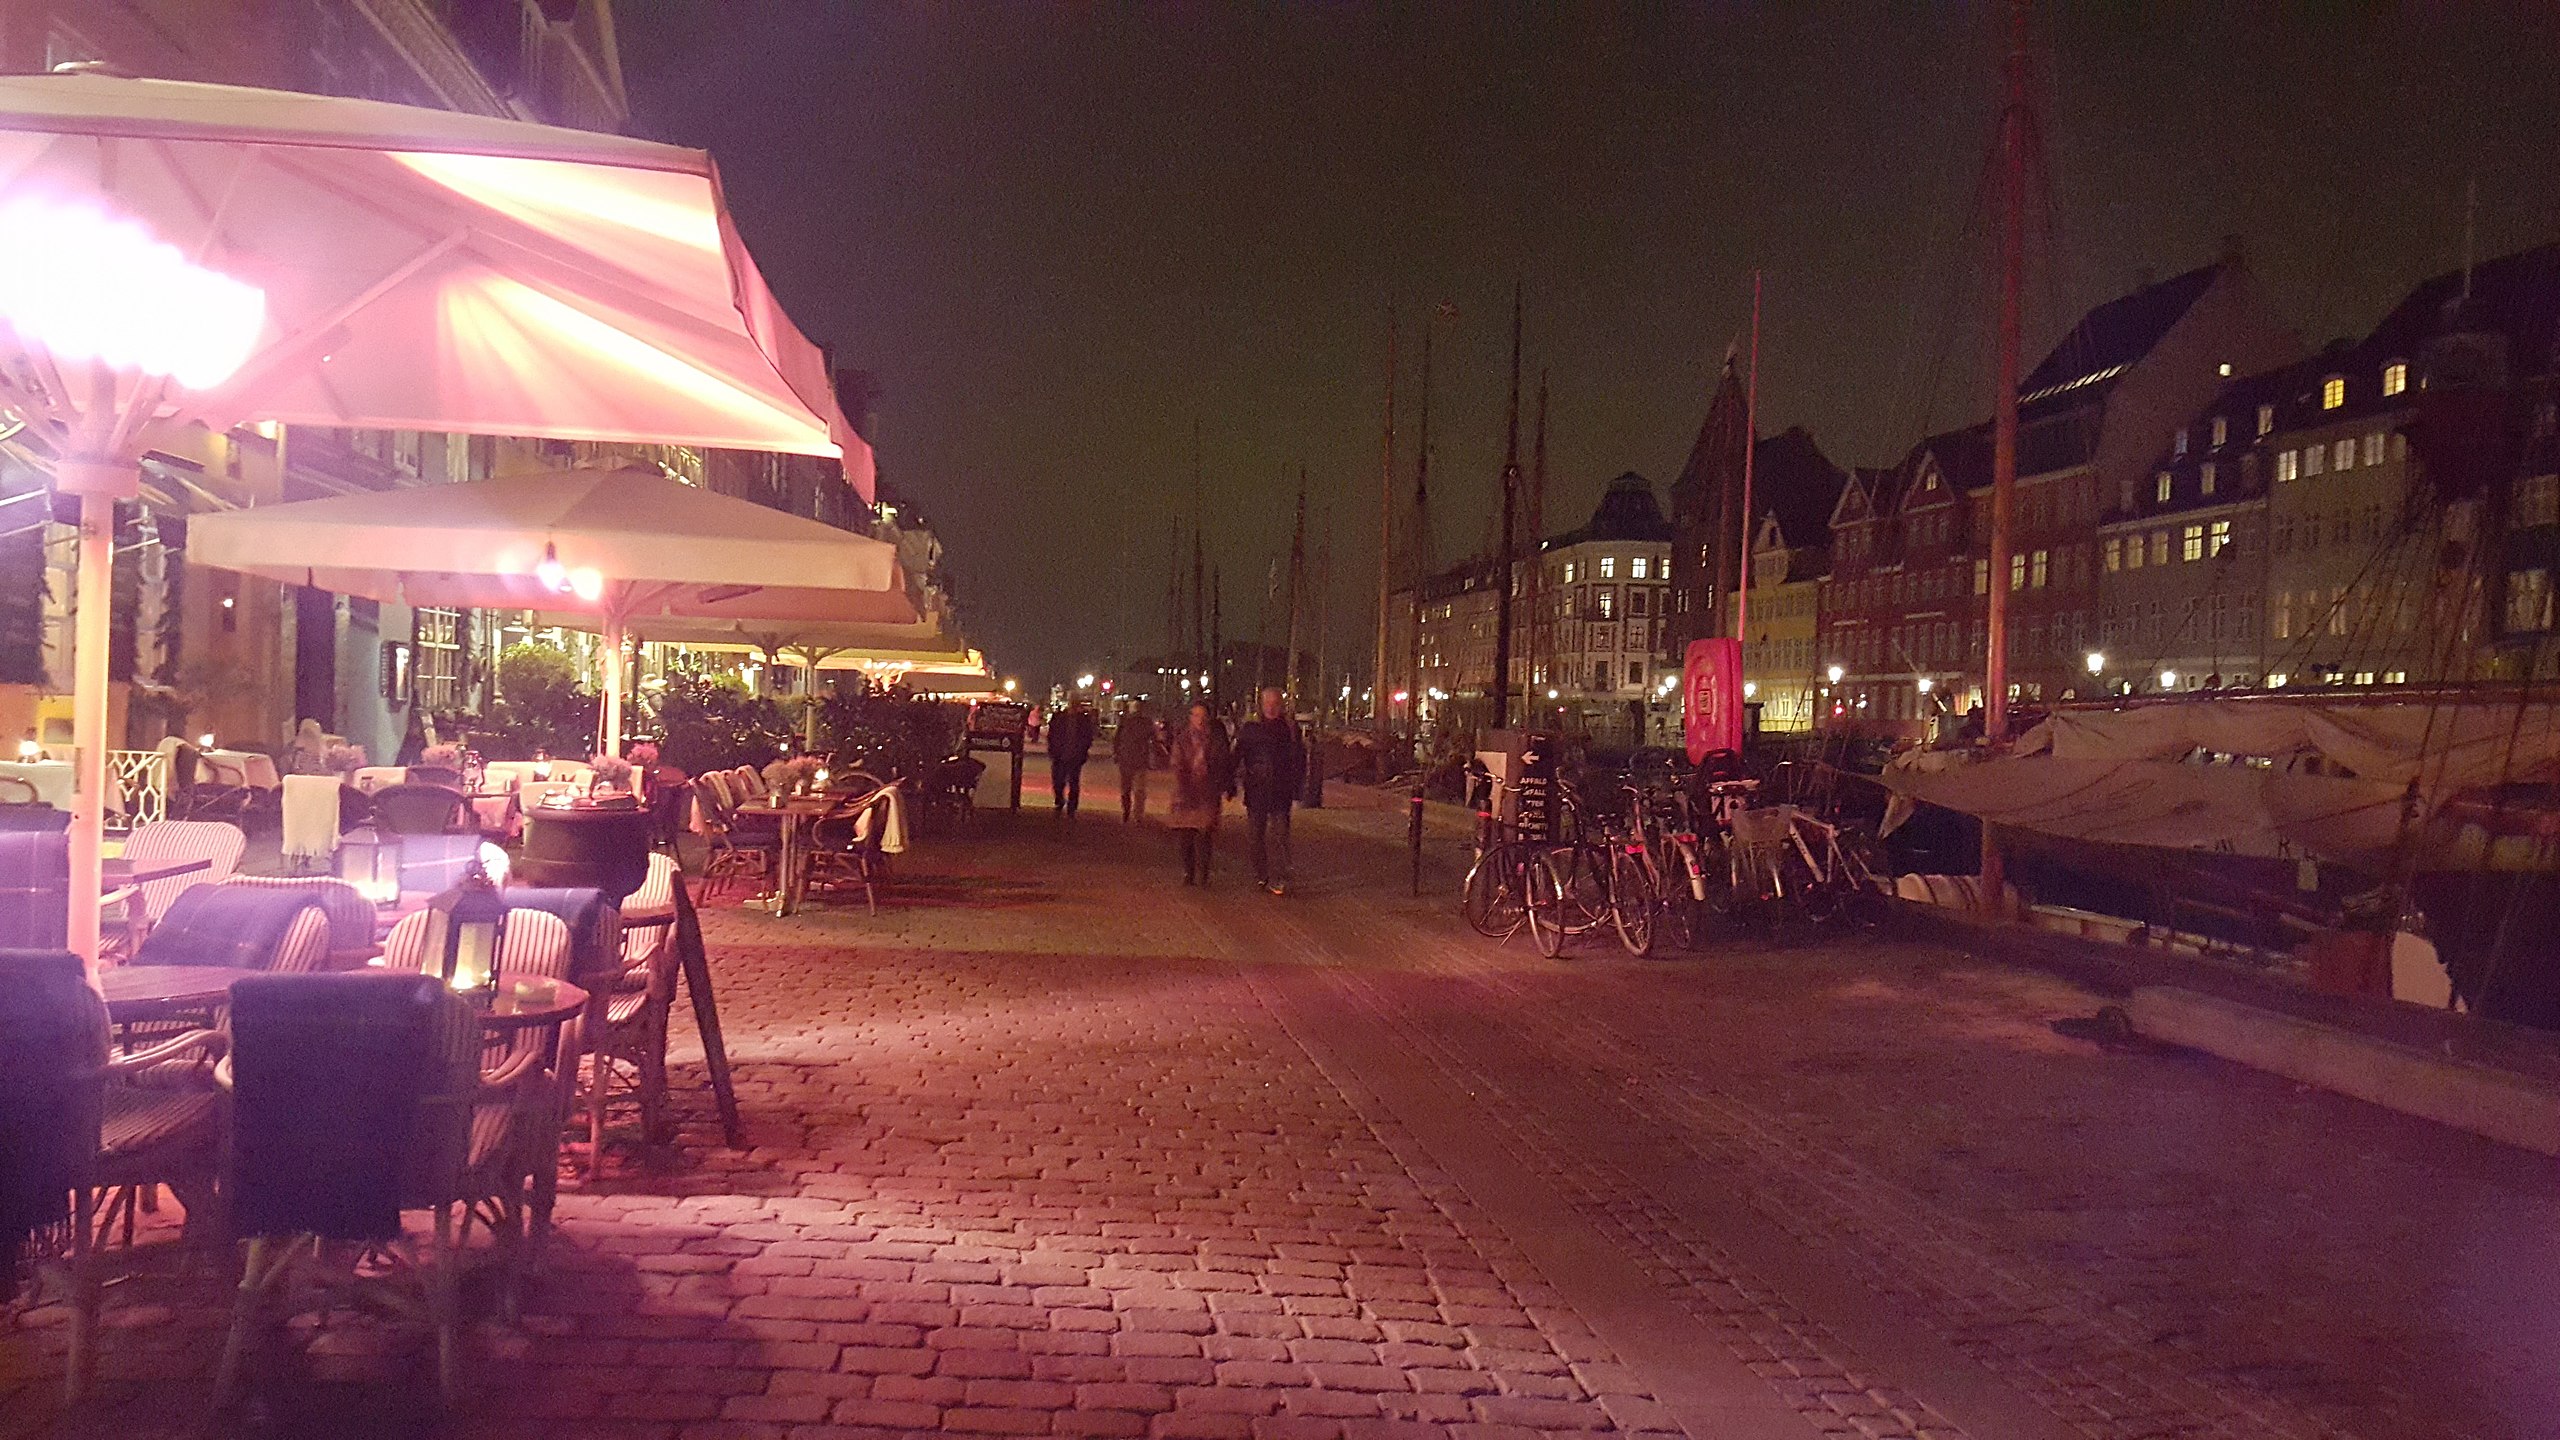 Tilpasning nok Sorg File:Copenhagen by night nyhavn 20151103-IE 1.jpg - Wikimedia Commons